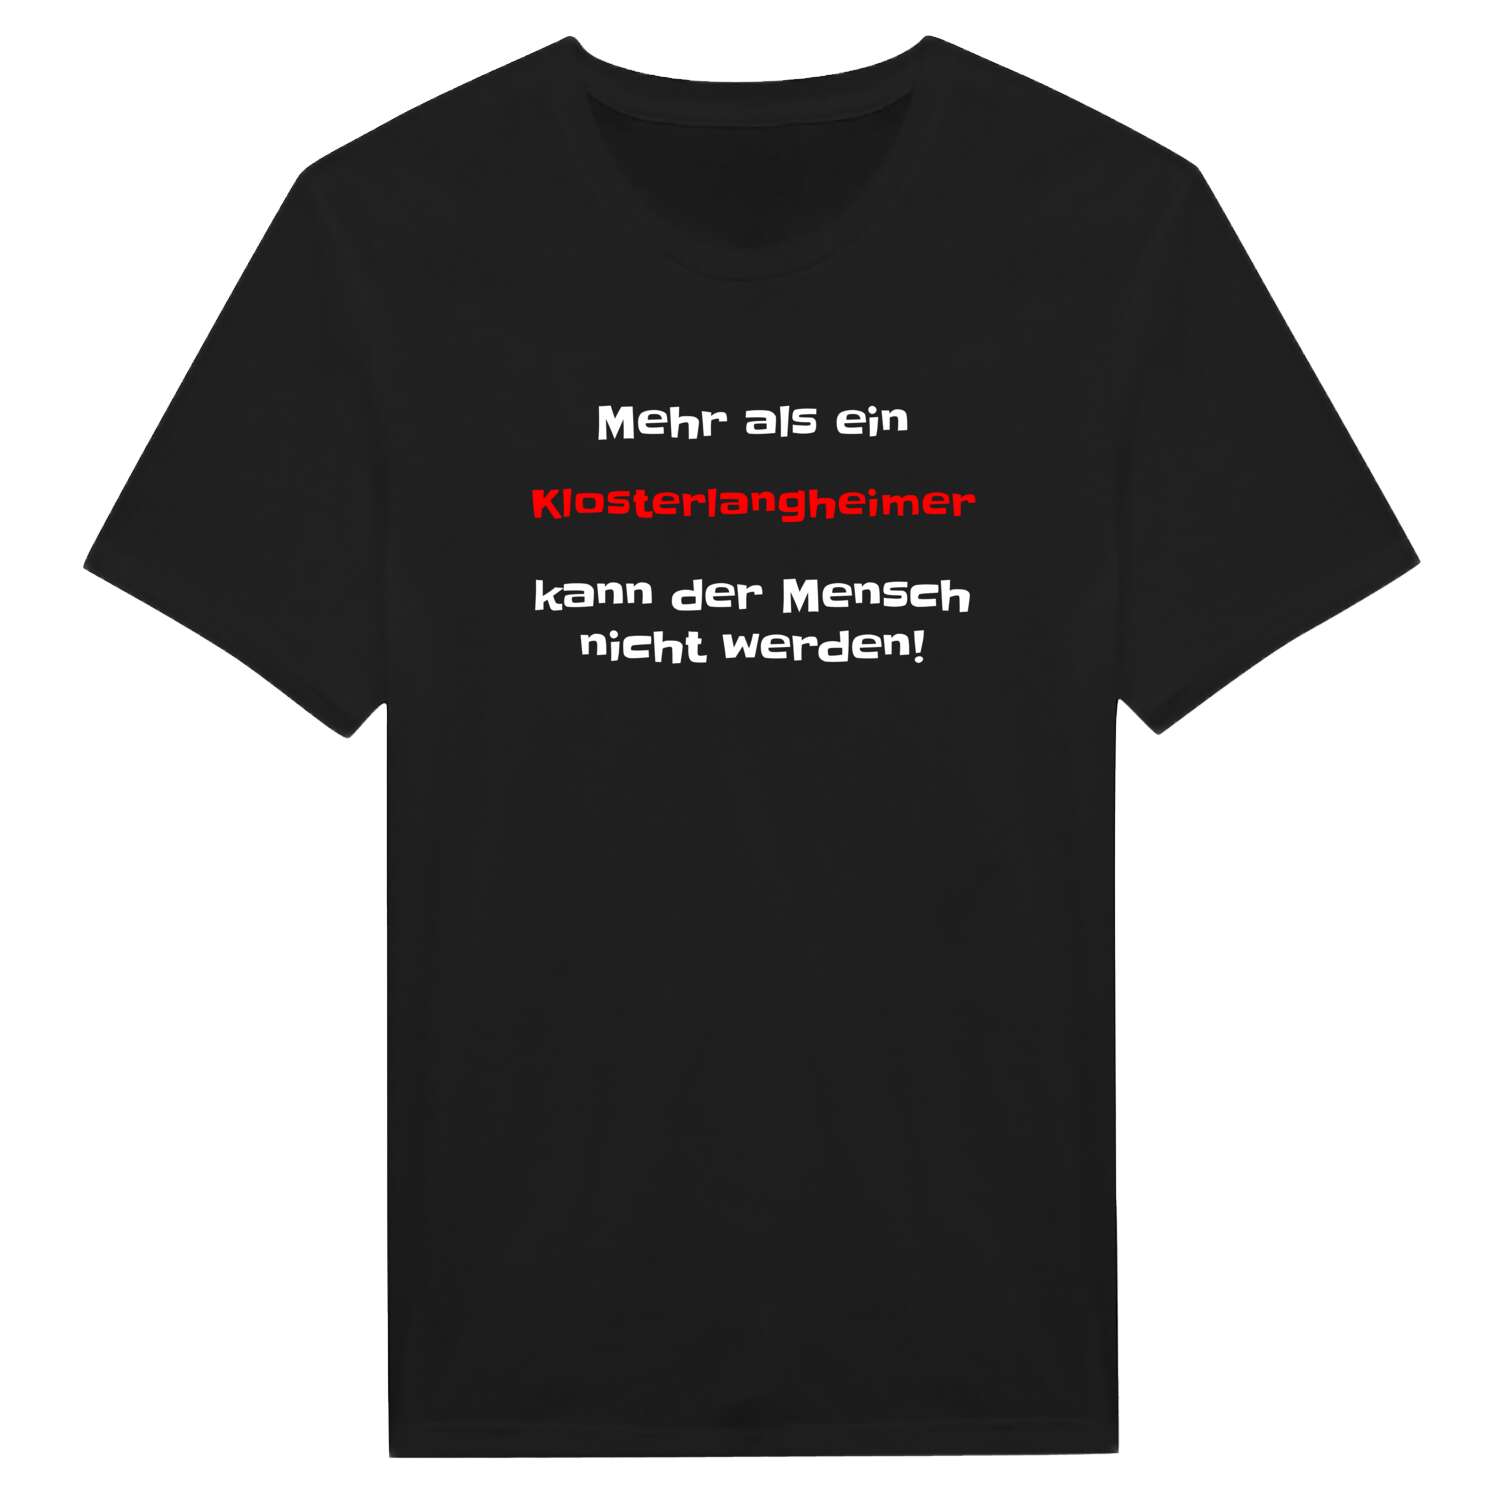 Klosterlangheim T-Shirt »Mehr als ein«